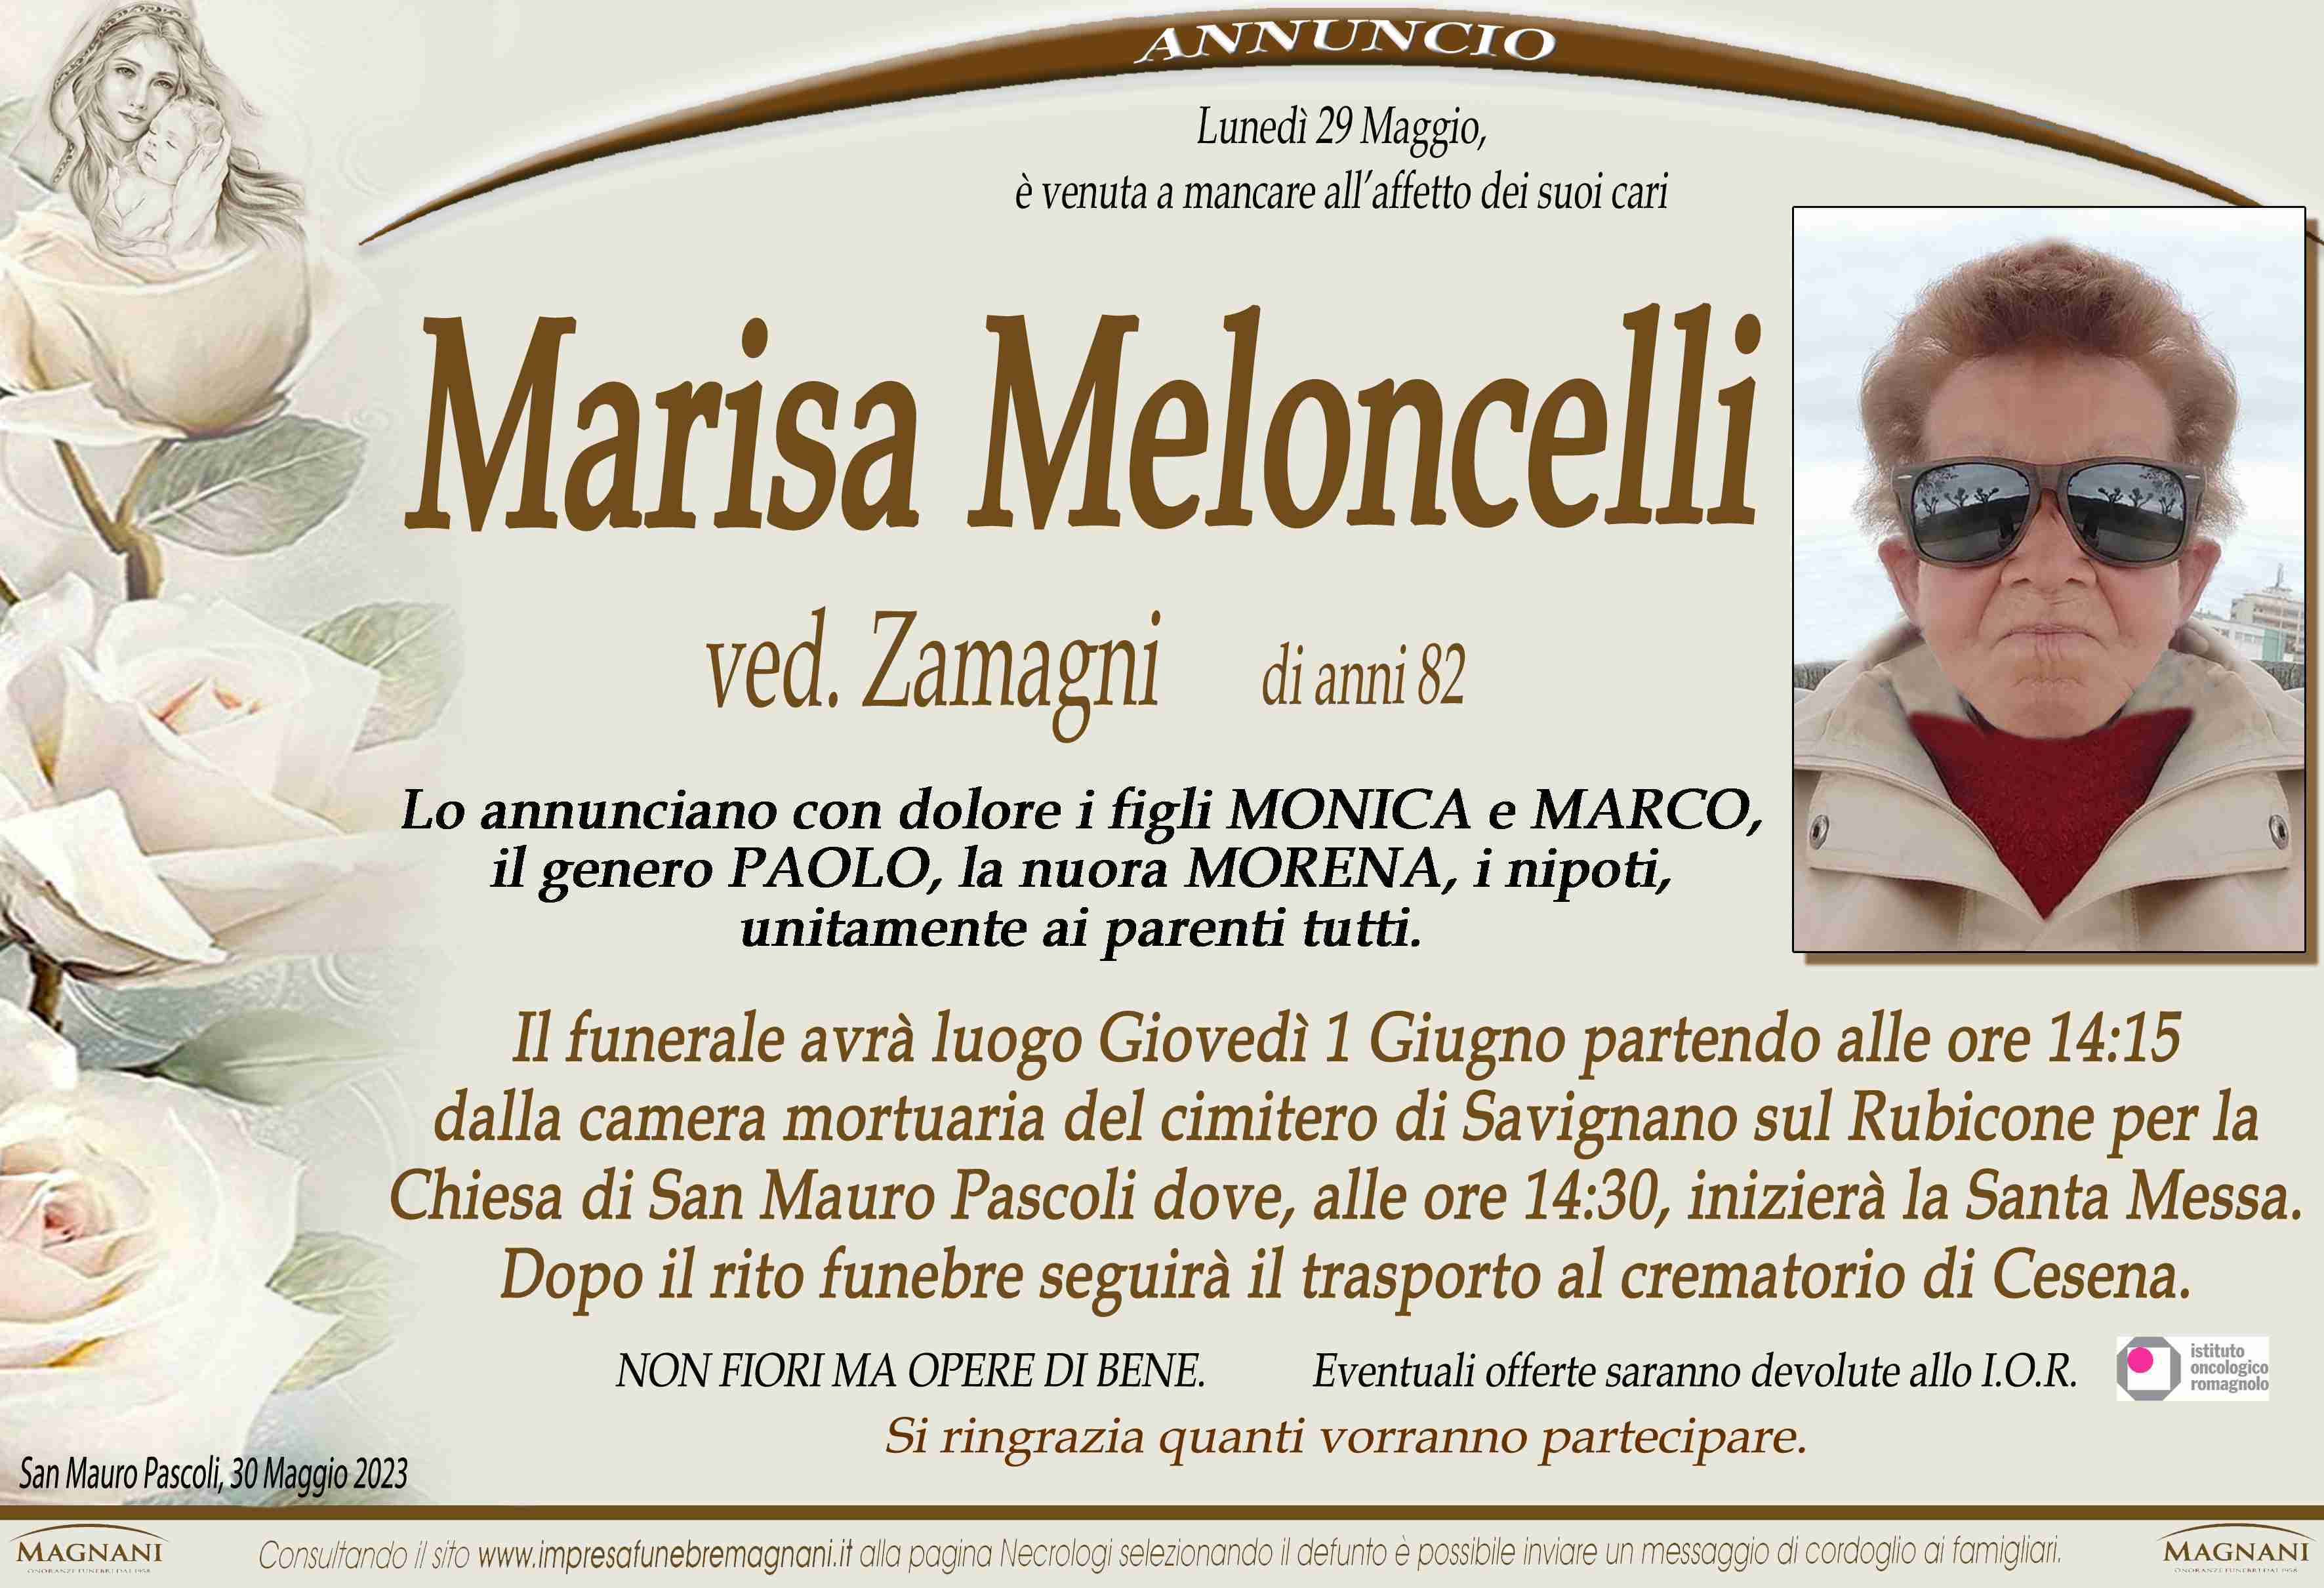 Marisa Meloncelli